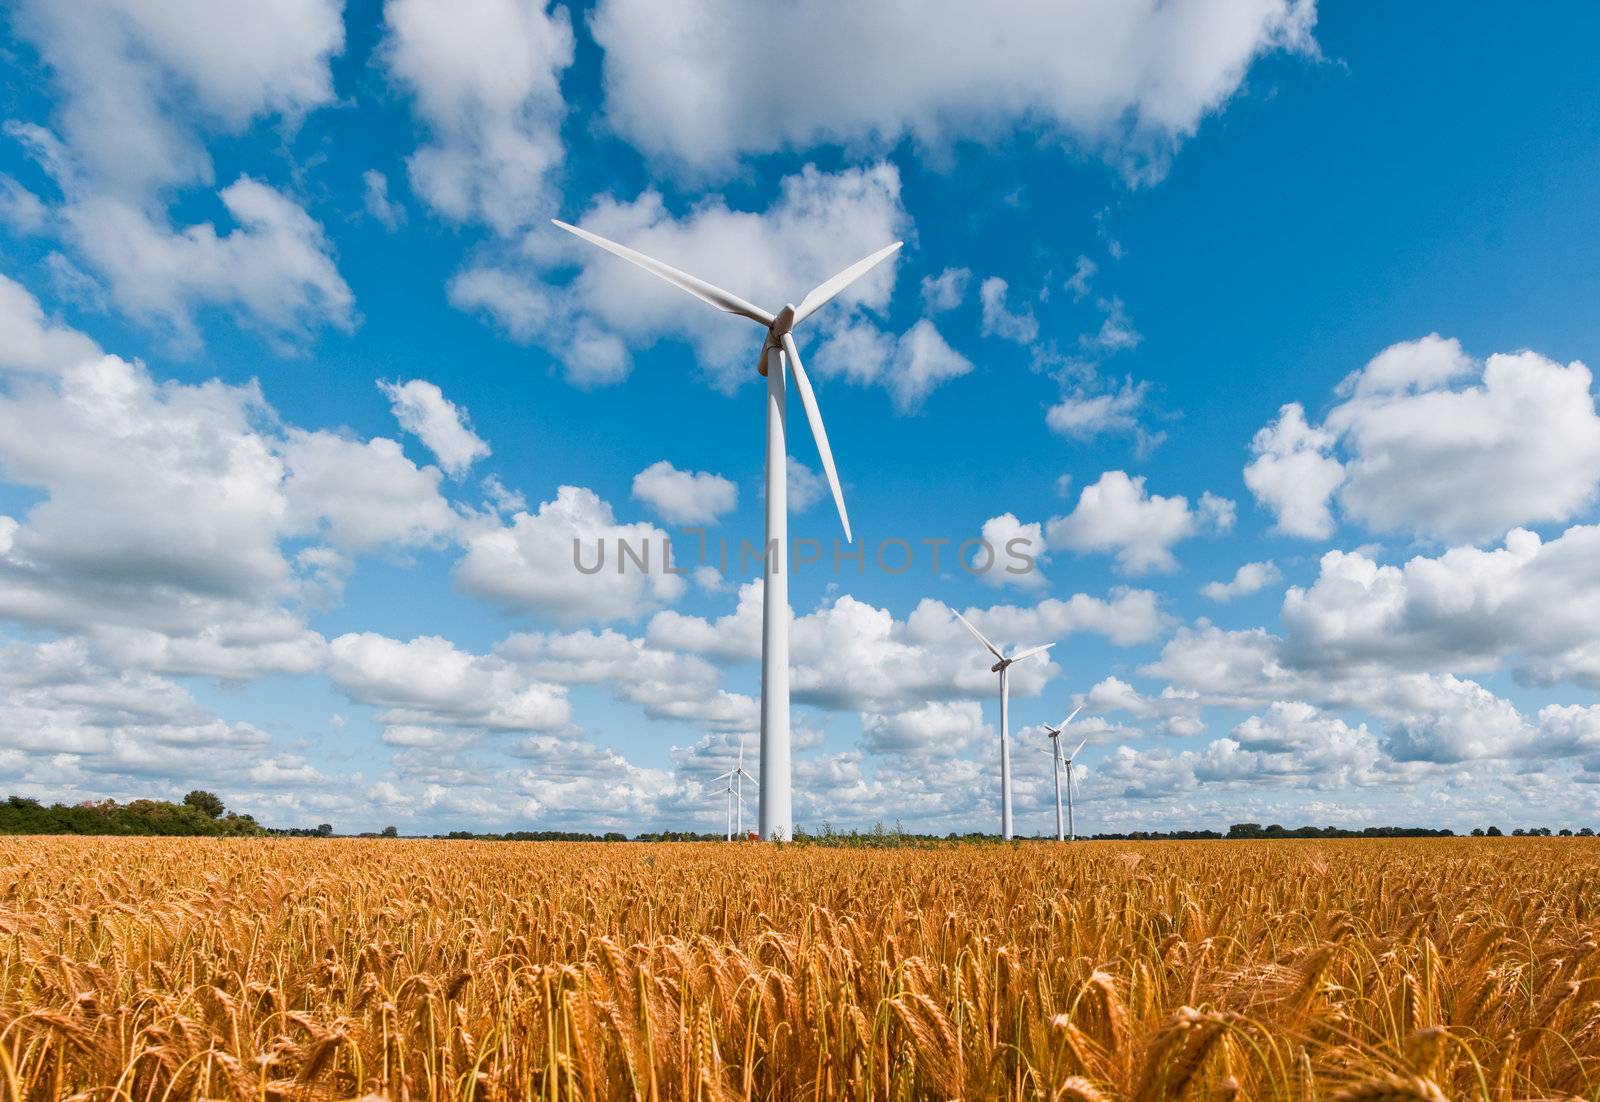 wind turbines in wheat field by filmstroem